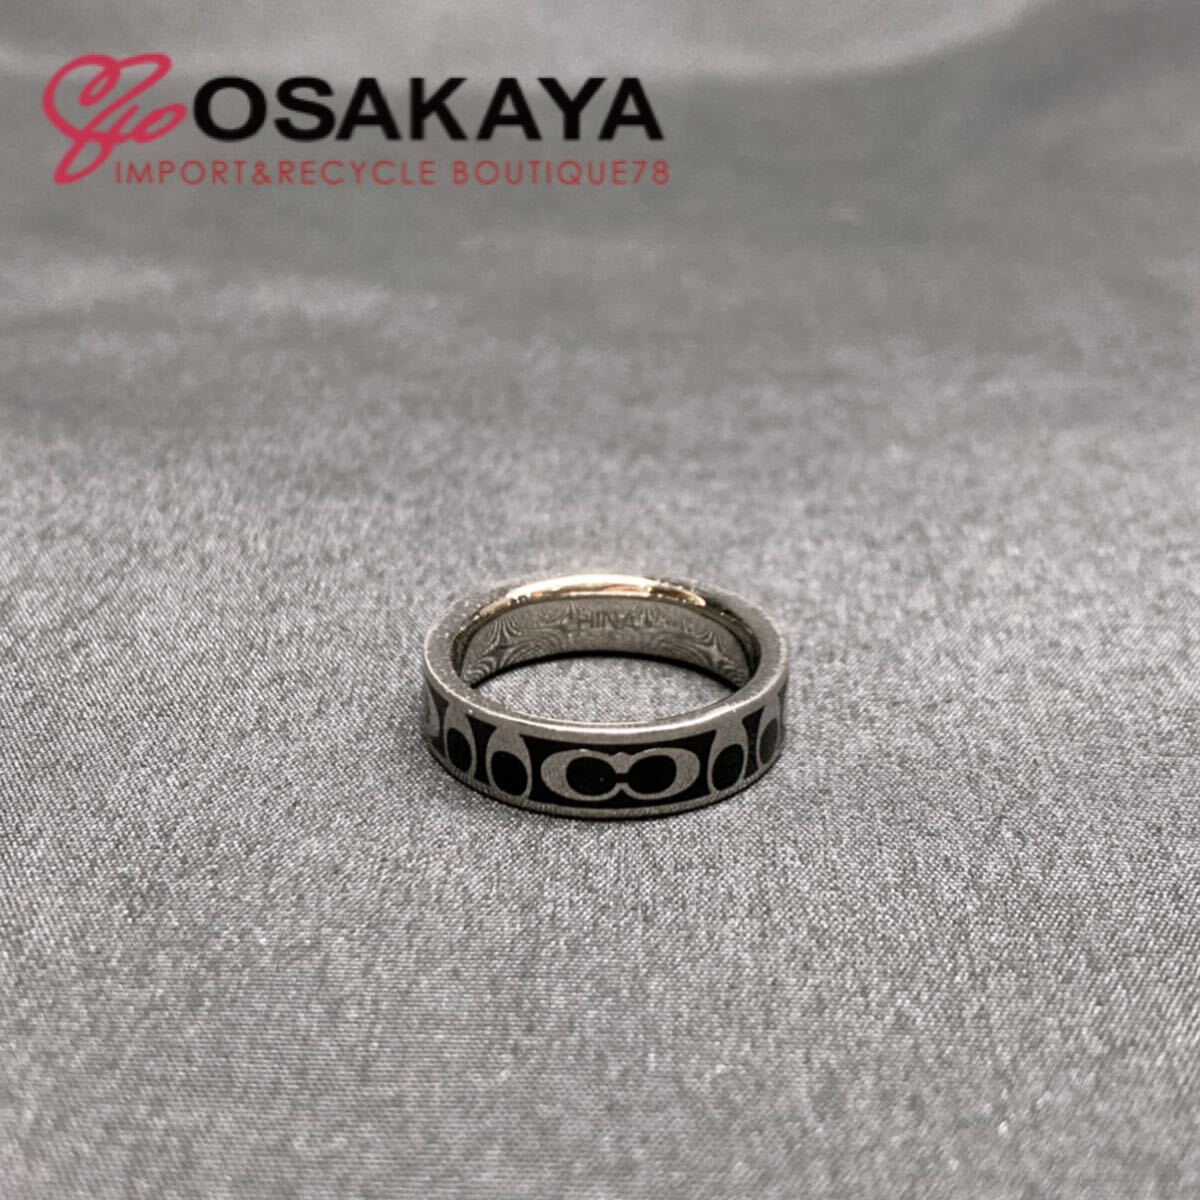  б/у COACH signature кольцо черный серебряный #11 Coach аксессуары женский мужской унисекс простой общий рисунок кольцо 